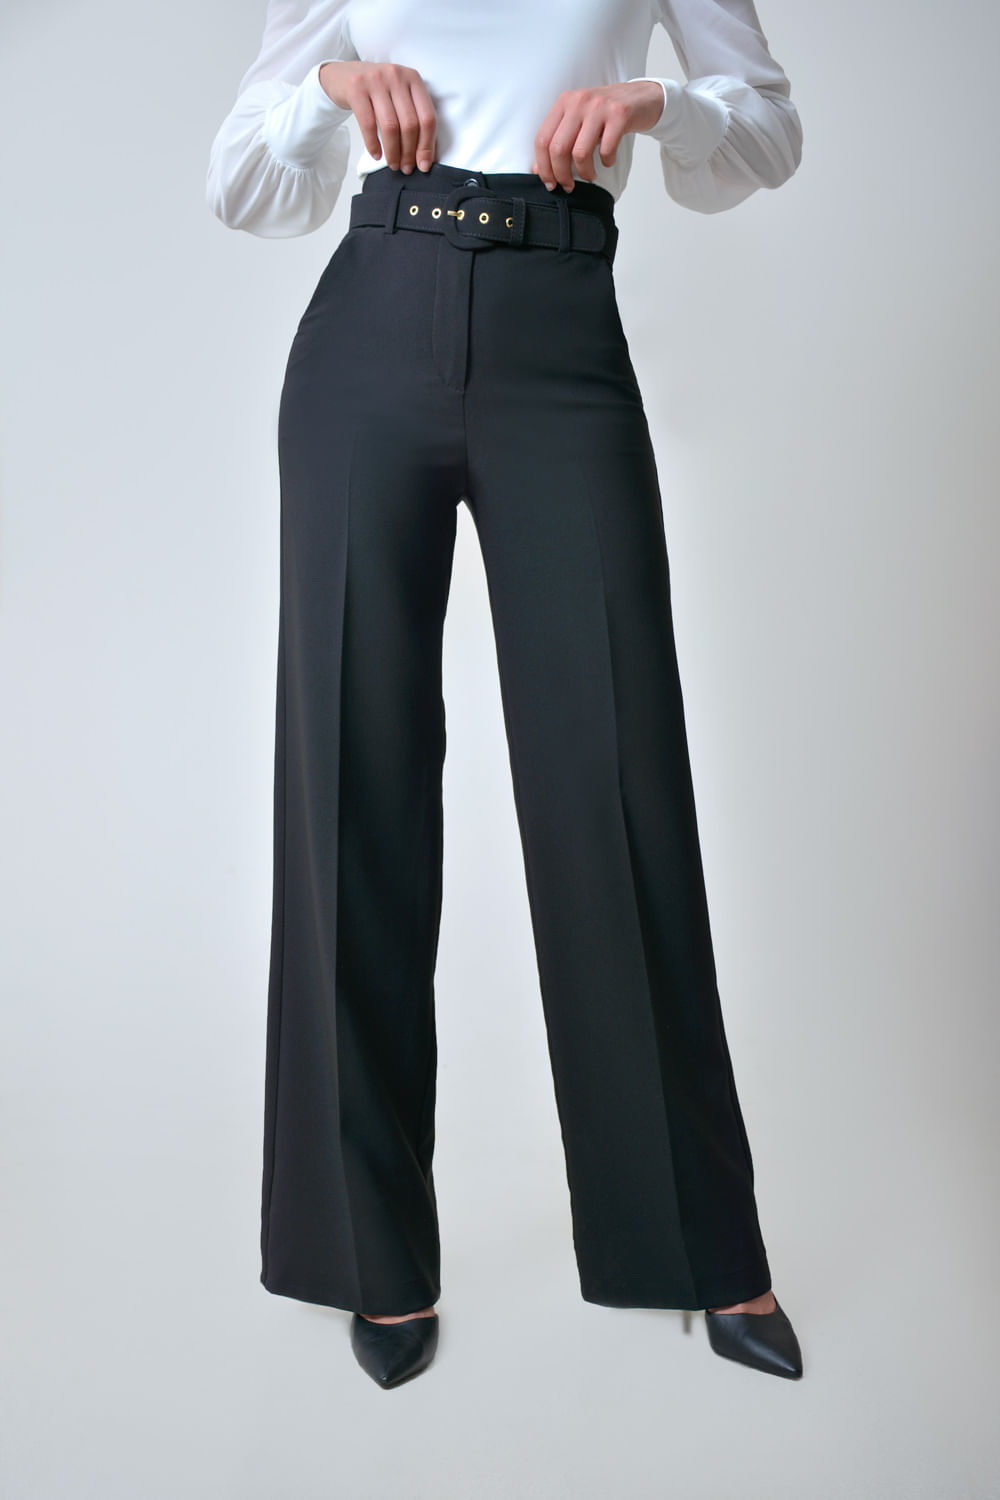 Retocar nivel Basura Pantalón Mujer Clásico En Tejido Plano Con Cinturón En Tela - Xuss